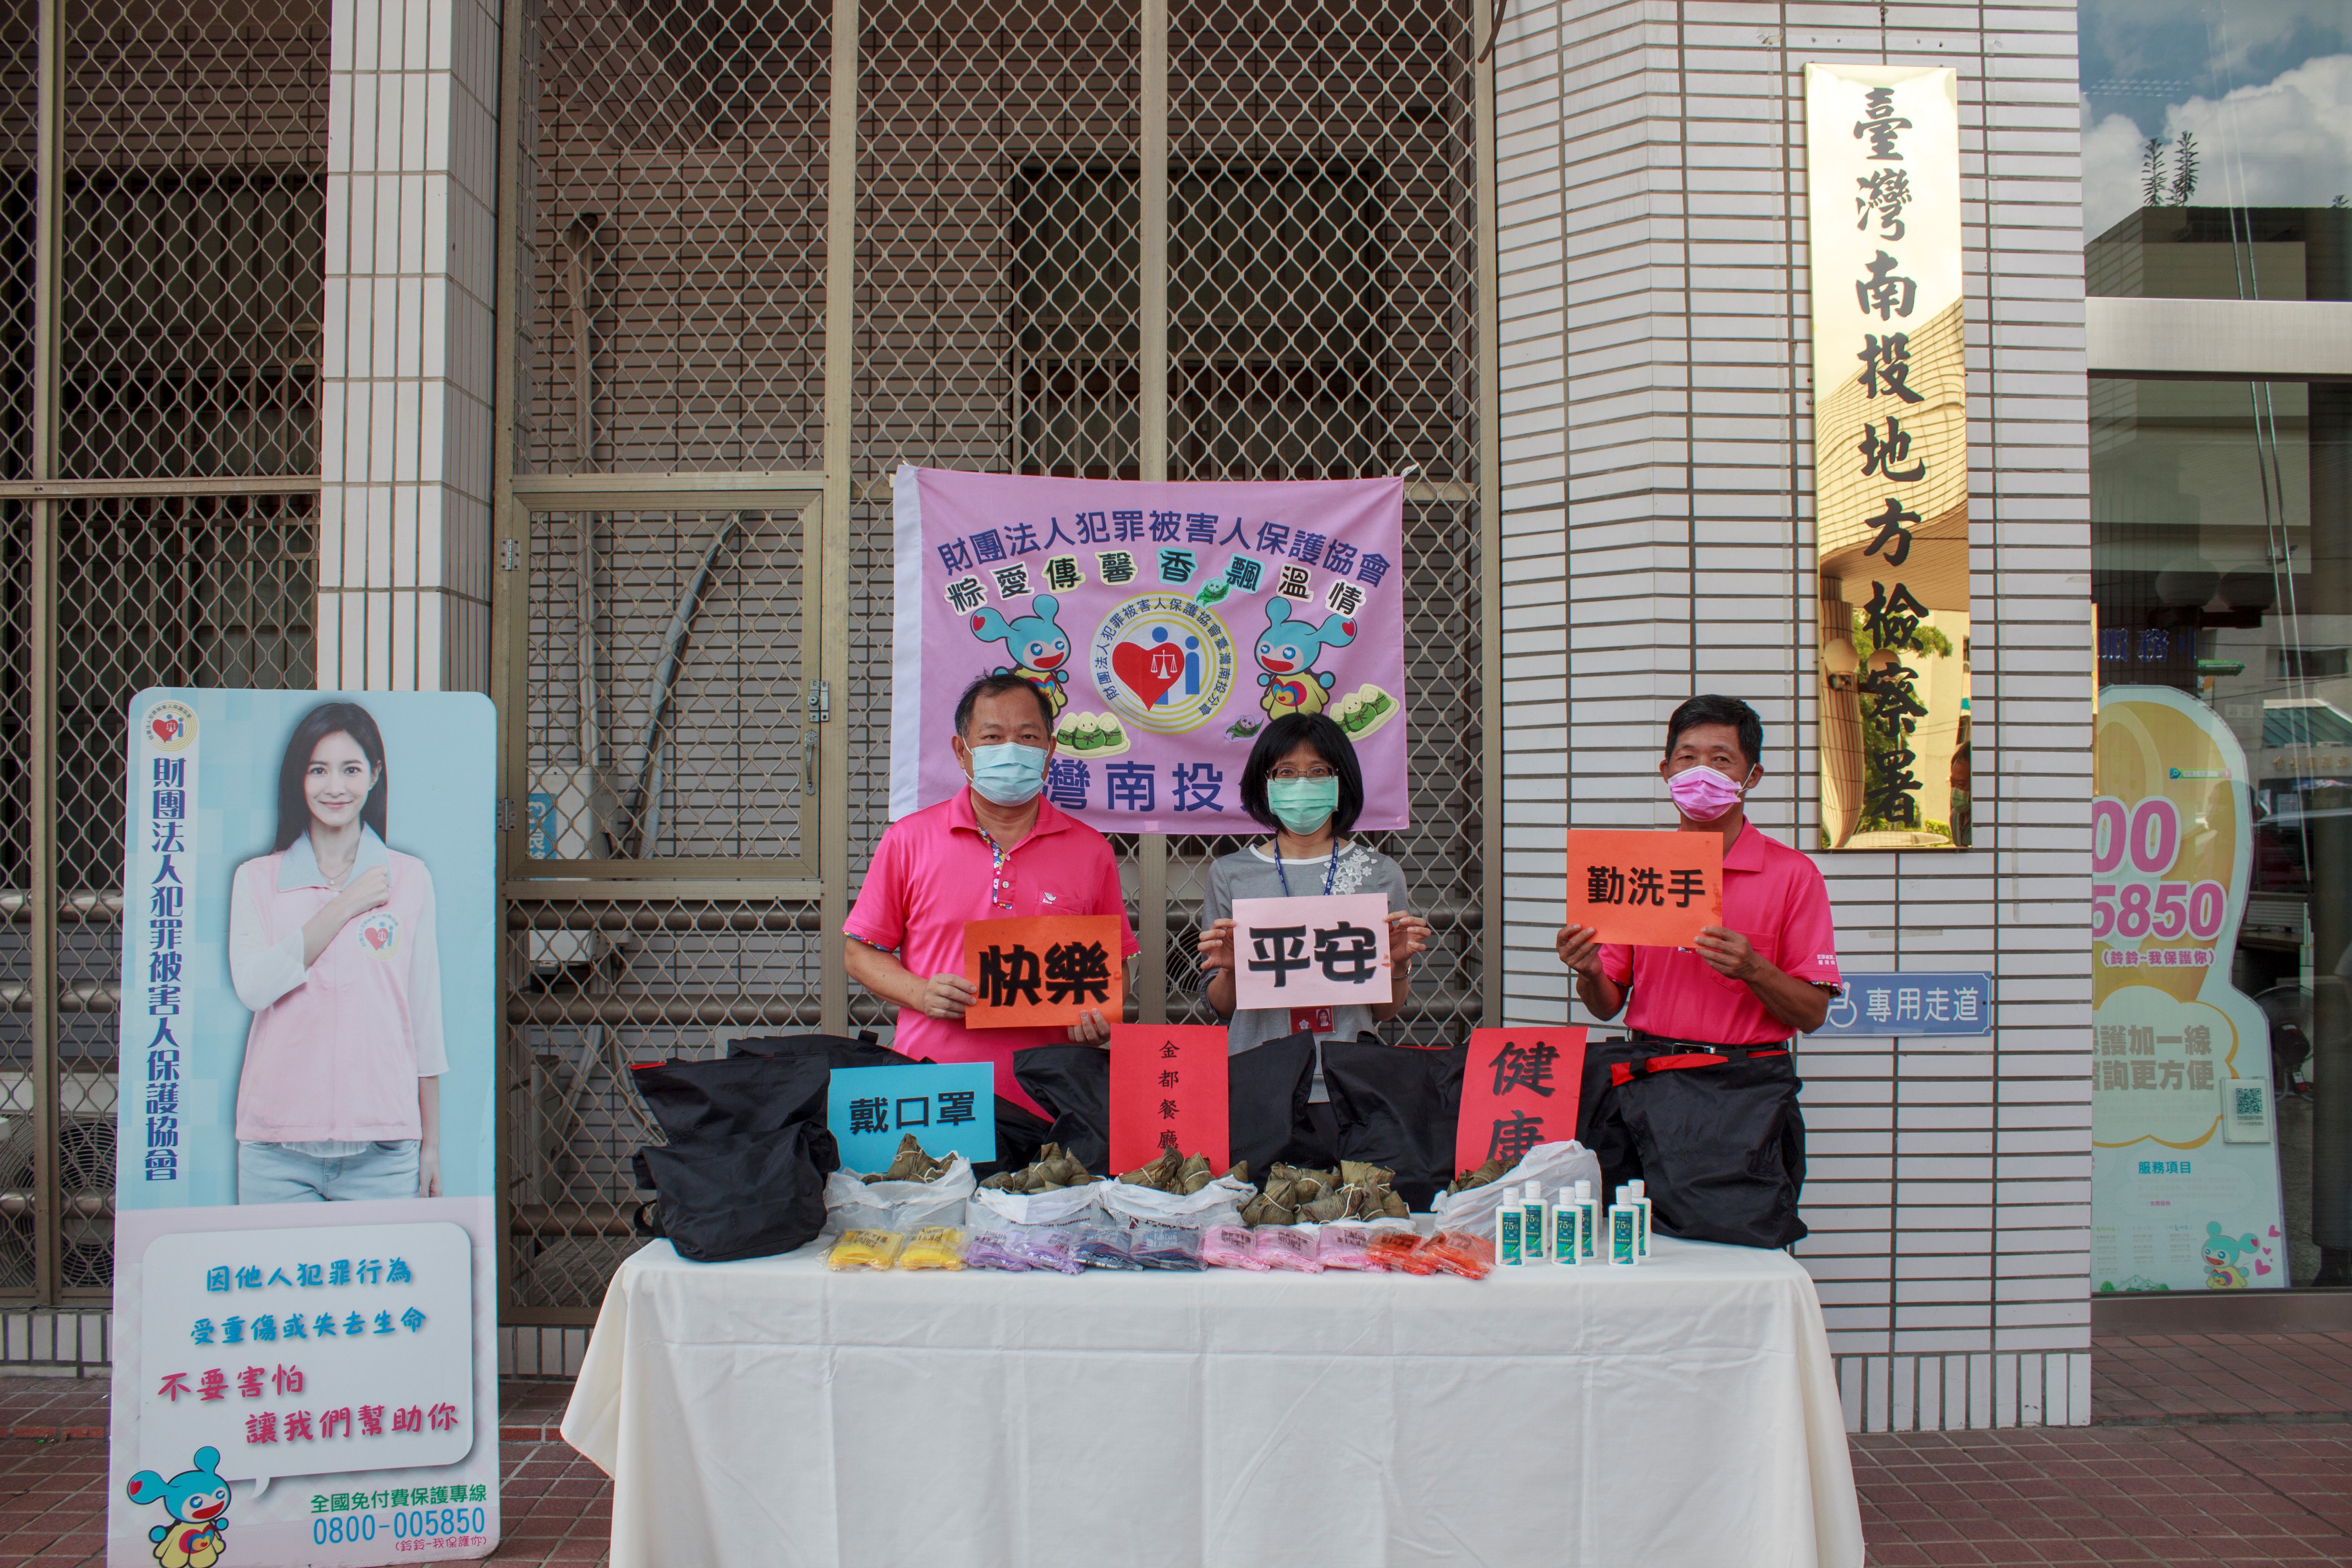 犯罪被害人保護協會臺灣南投分會舉辦端午節關懷活動